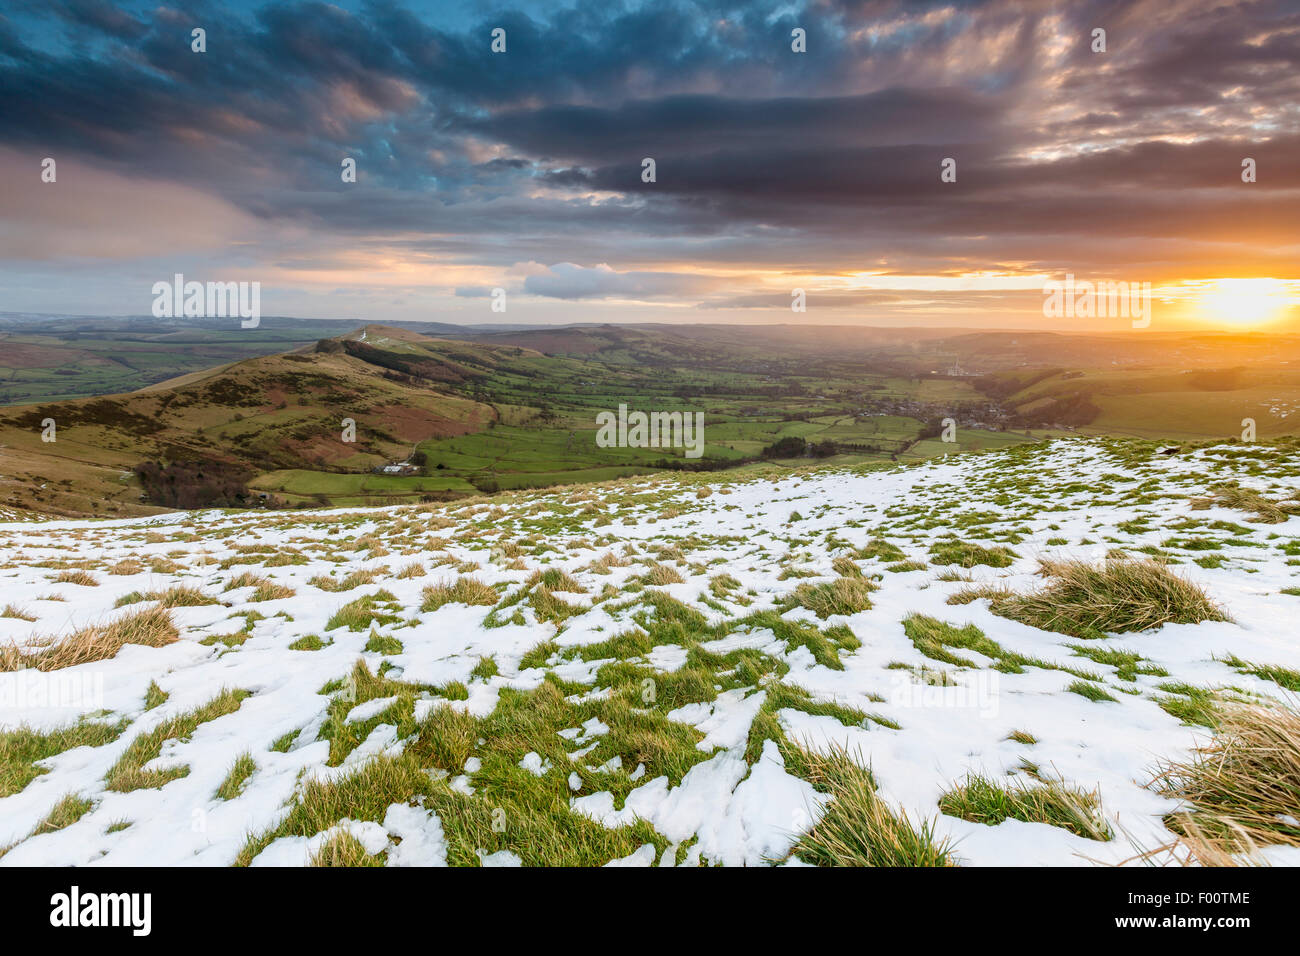 Blick über Hope Valley von Mam Tor, High Peak District, Peak District National Park, Castelton, Derbyshire, England, Vereinigtes König Stockfoto